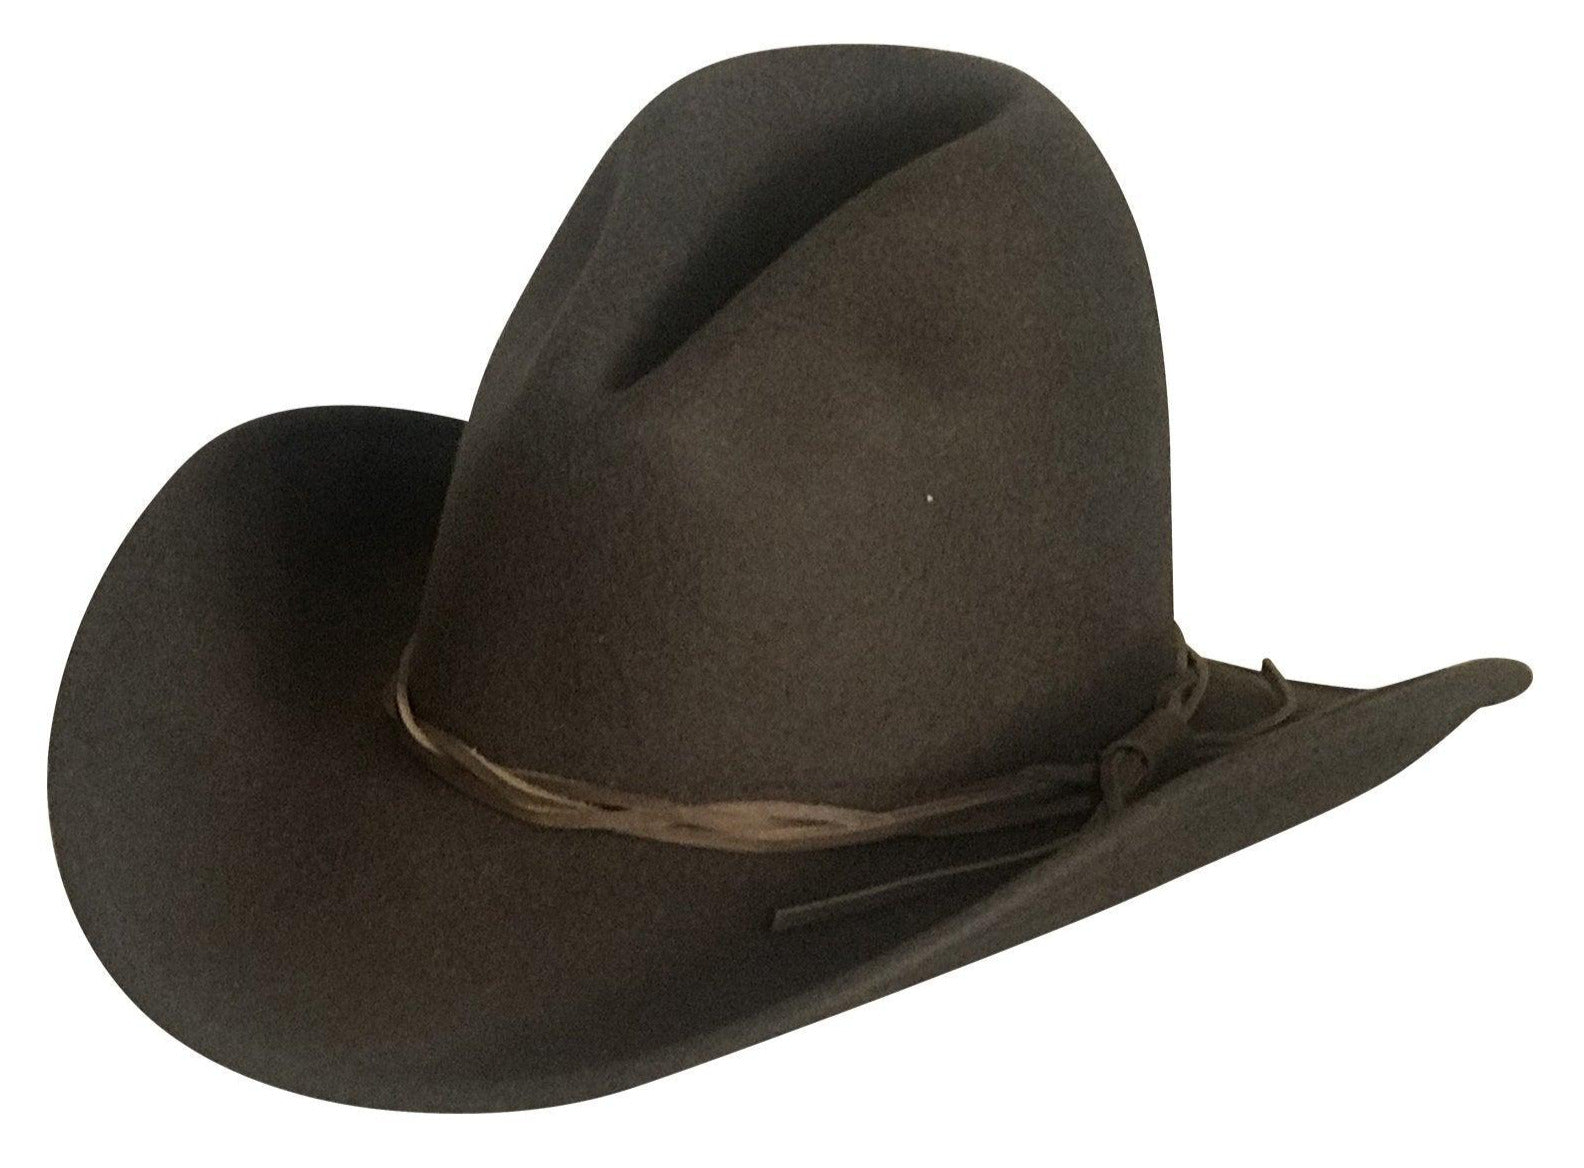 Lonesome Gus Brown Premium 100% Wool Western Cowboy Hat - Flyclothing LLC